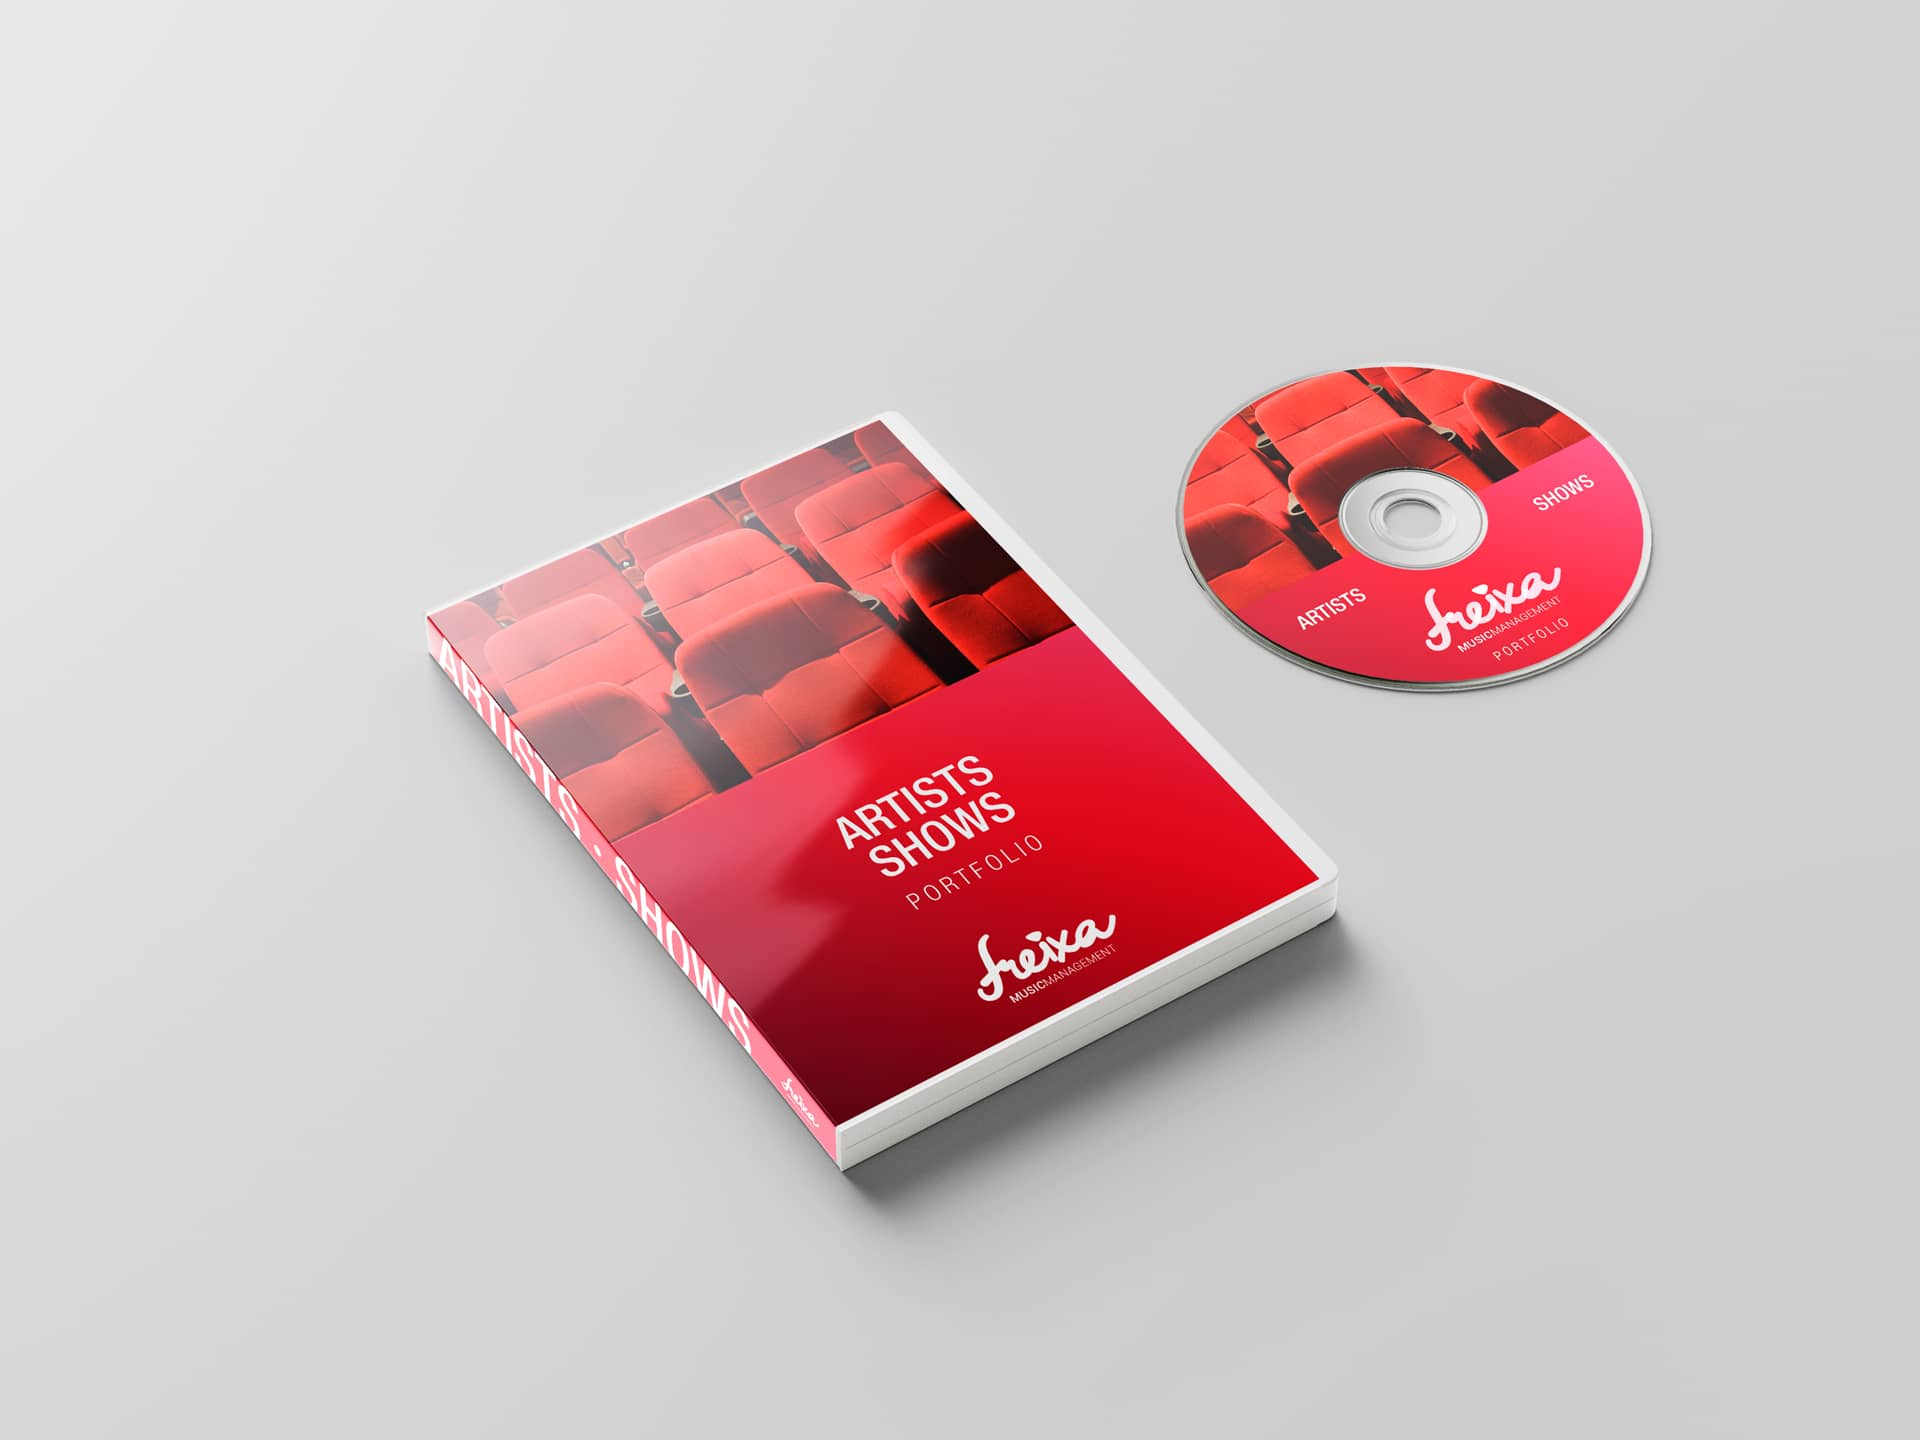 Catálogo artistas en DVD Freixa Music branding por The Acctitude